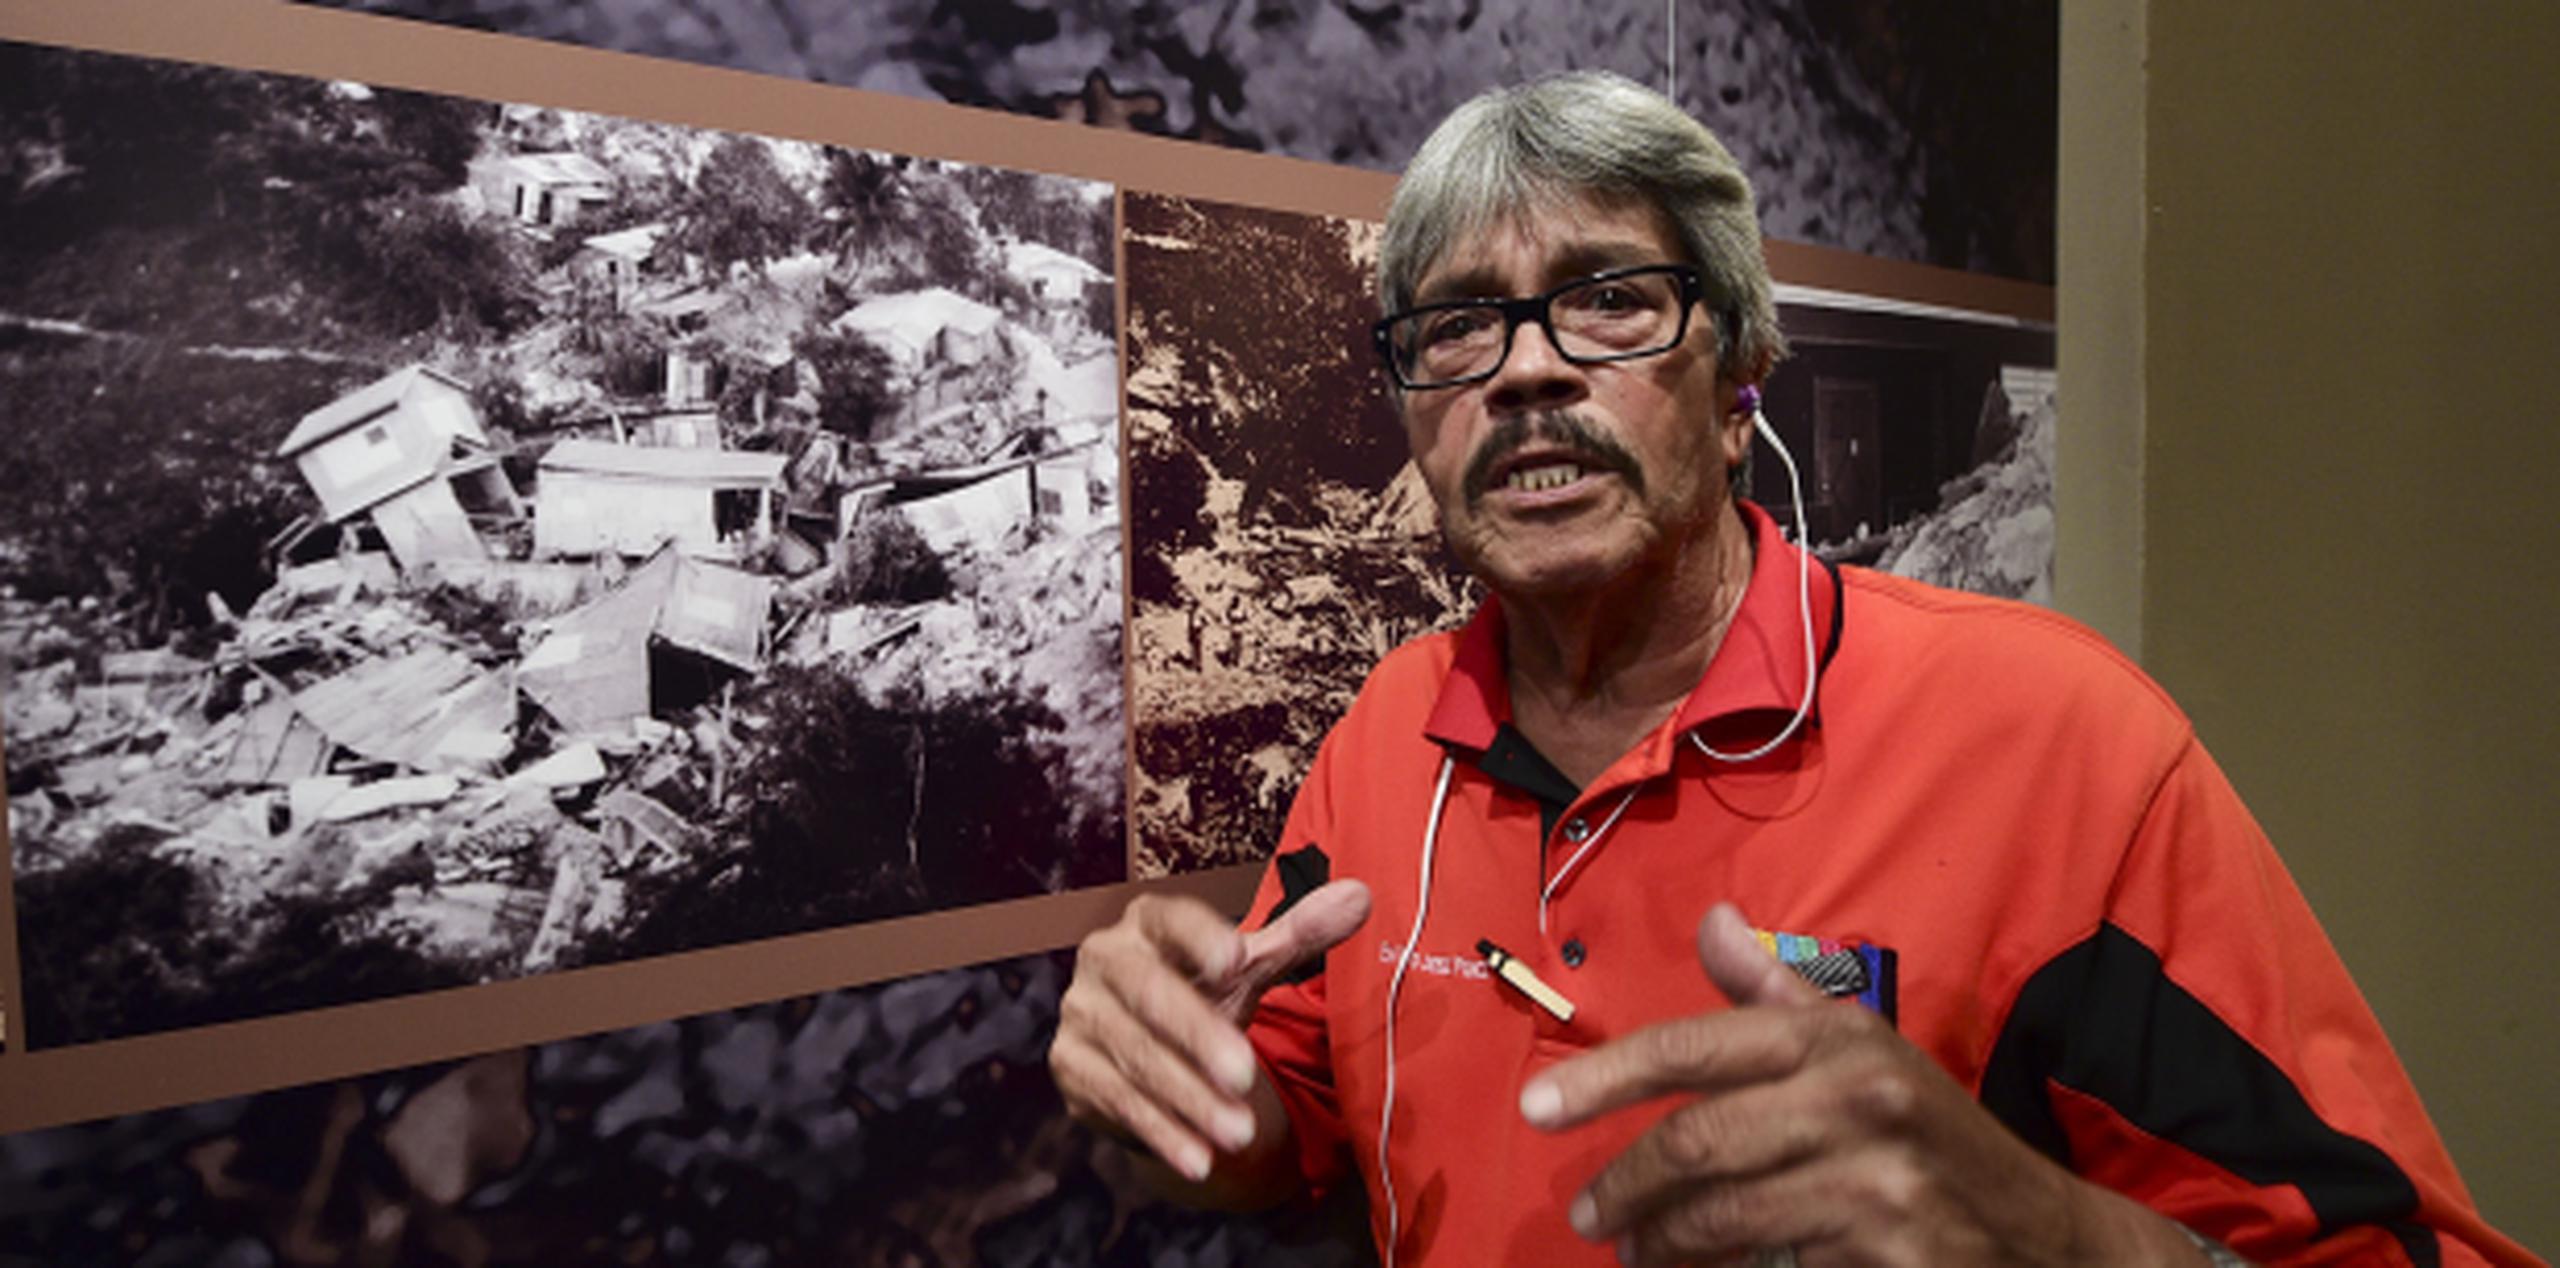 El periodistsa Wilmer González, el primer reportero en llegar a la tragedia, recuerda la tragedia de Mameyes en una exposición conmemorativa del 30 aniversario del deslizamiento que enterró a una comunidad. (tony.zayas@gfrmedia.com)